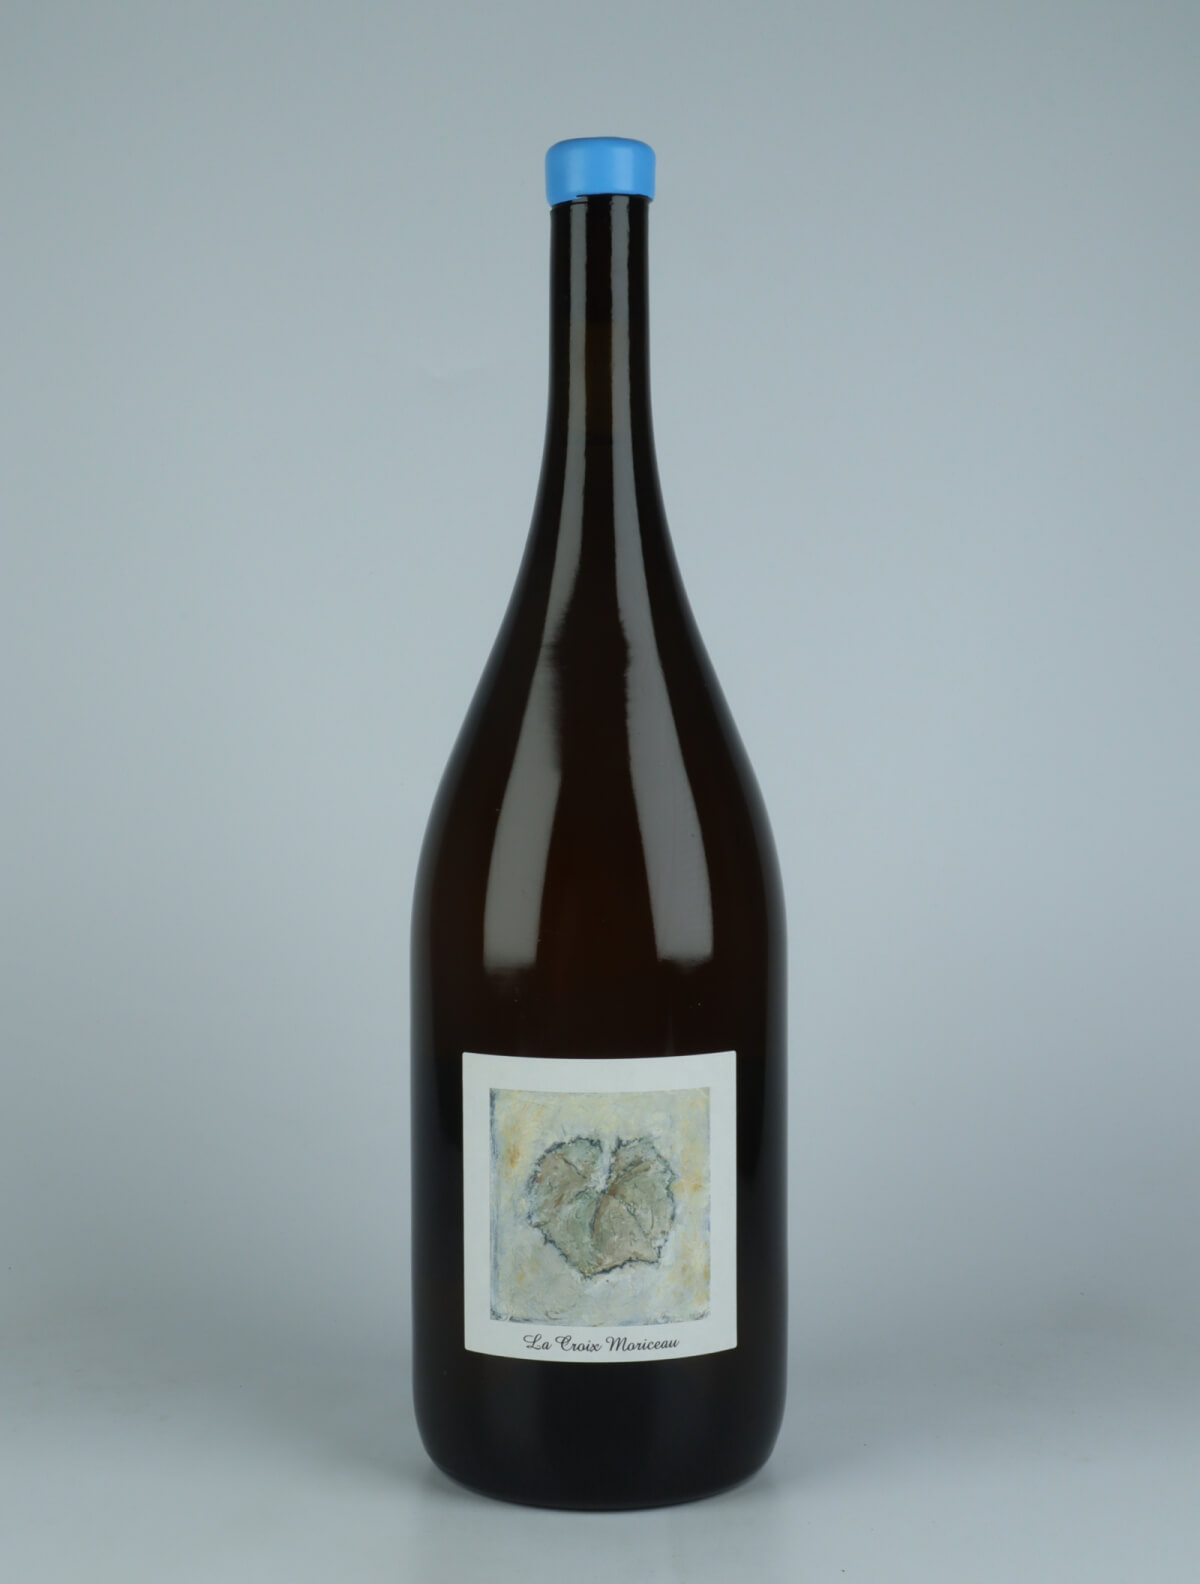 En flaske 2022 La Croix Moriceau - Magnum Hvidvin fra Complémen'terre, Loire i Frankrig